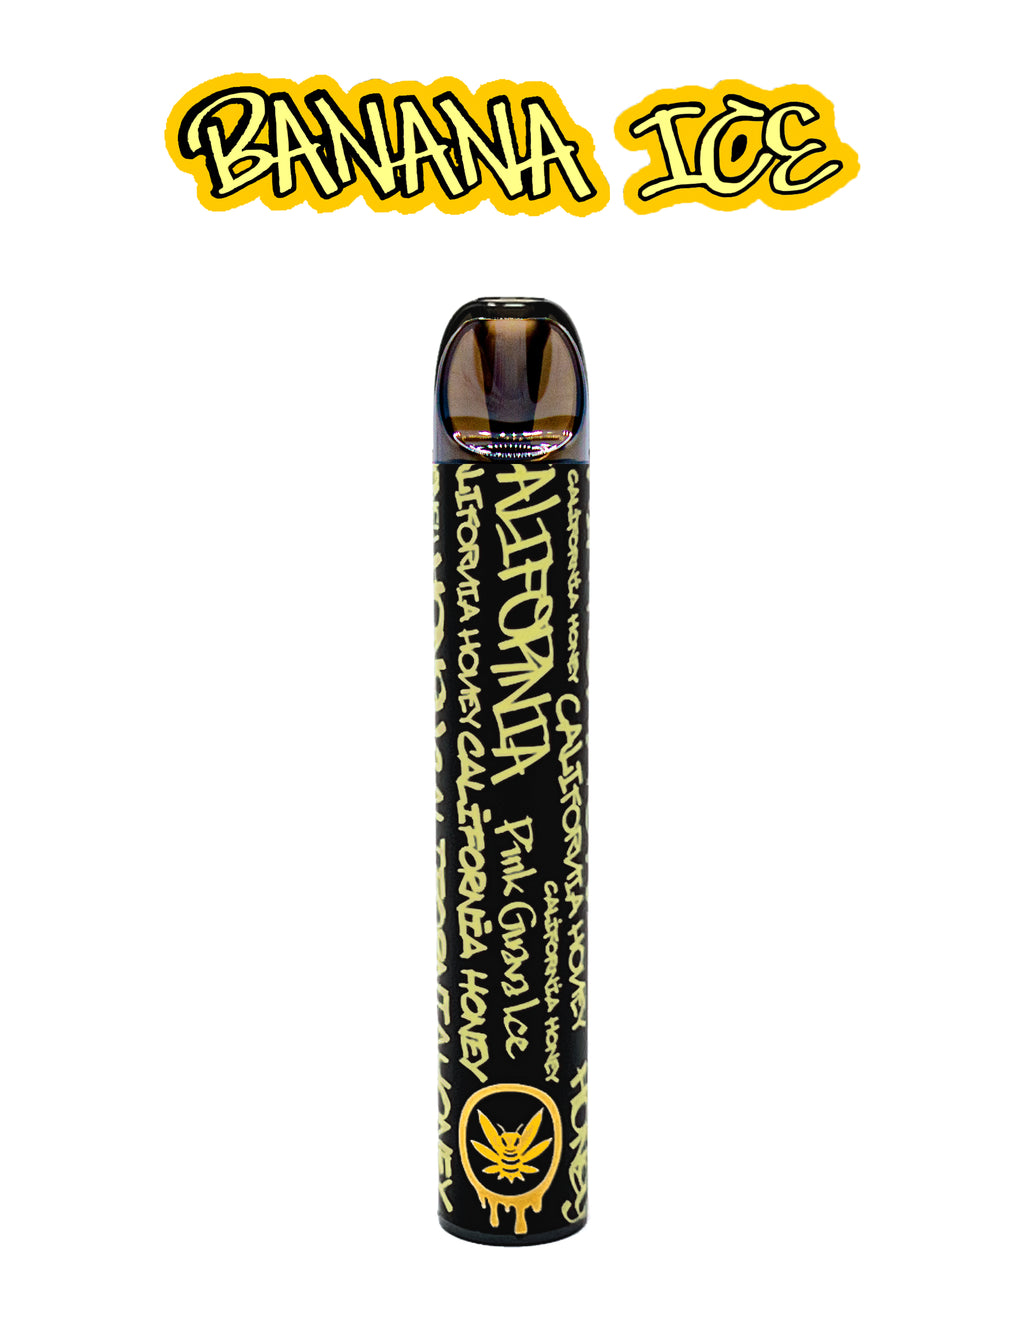 Nicotine Vape - Banana Ice